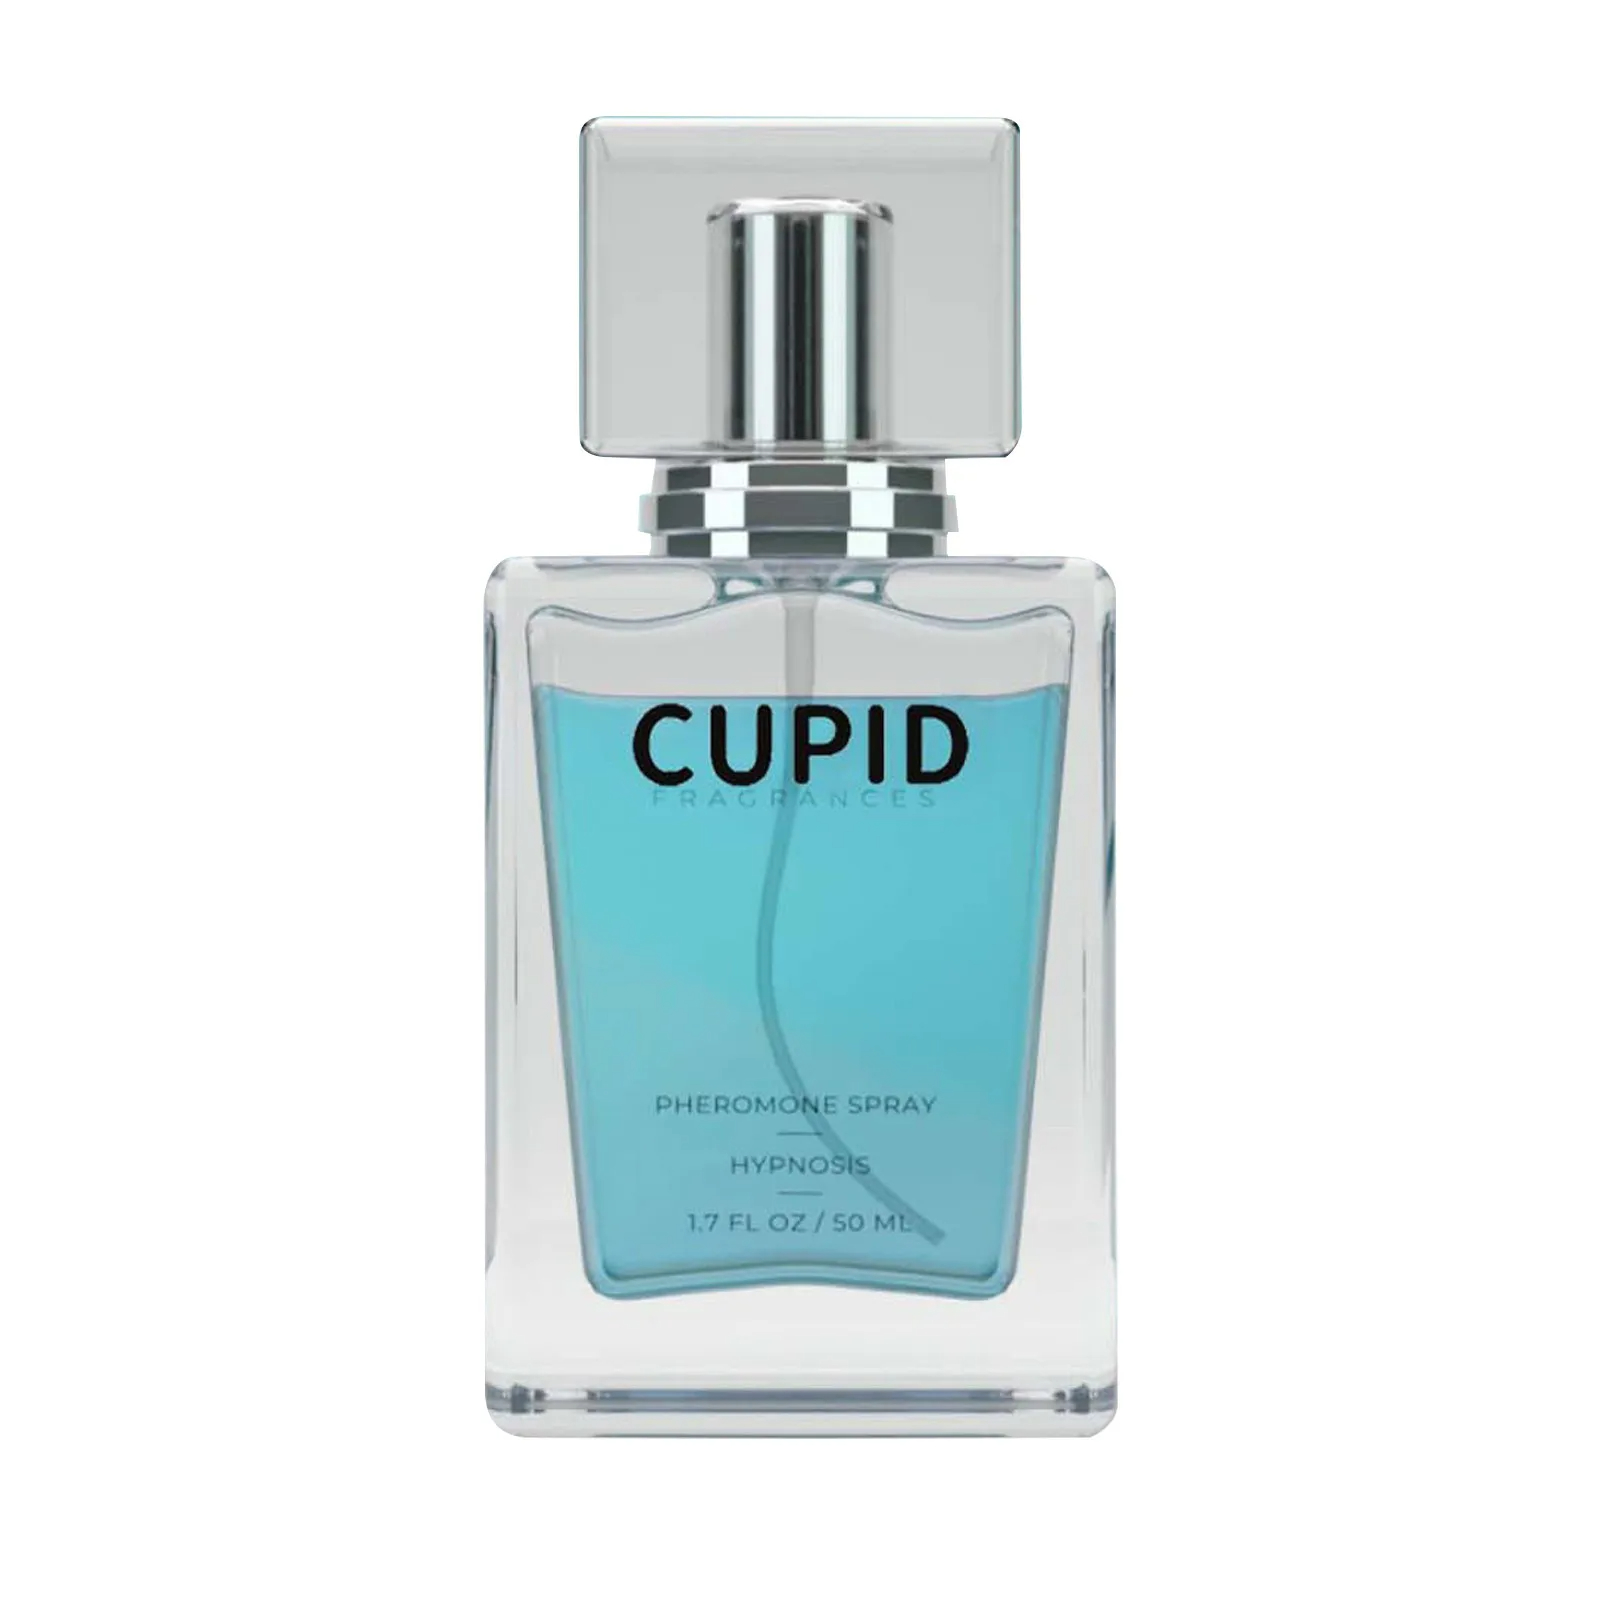 Parfum de Toilette à breloque cupidon pour hommes, infusé de phéromones, parfum masculin, hypnose, Cologne, 50ml